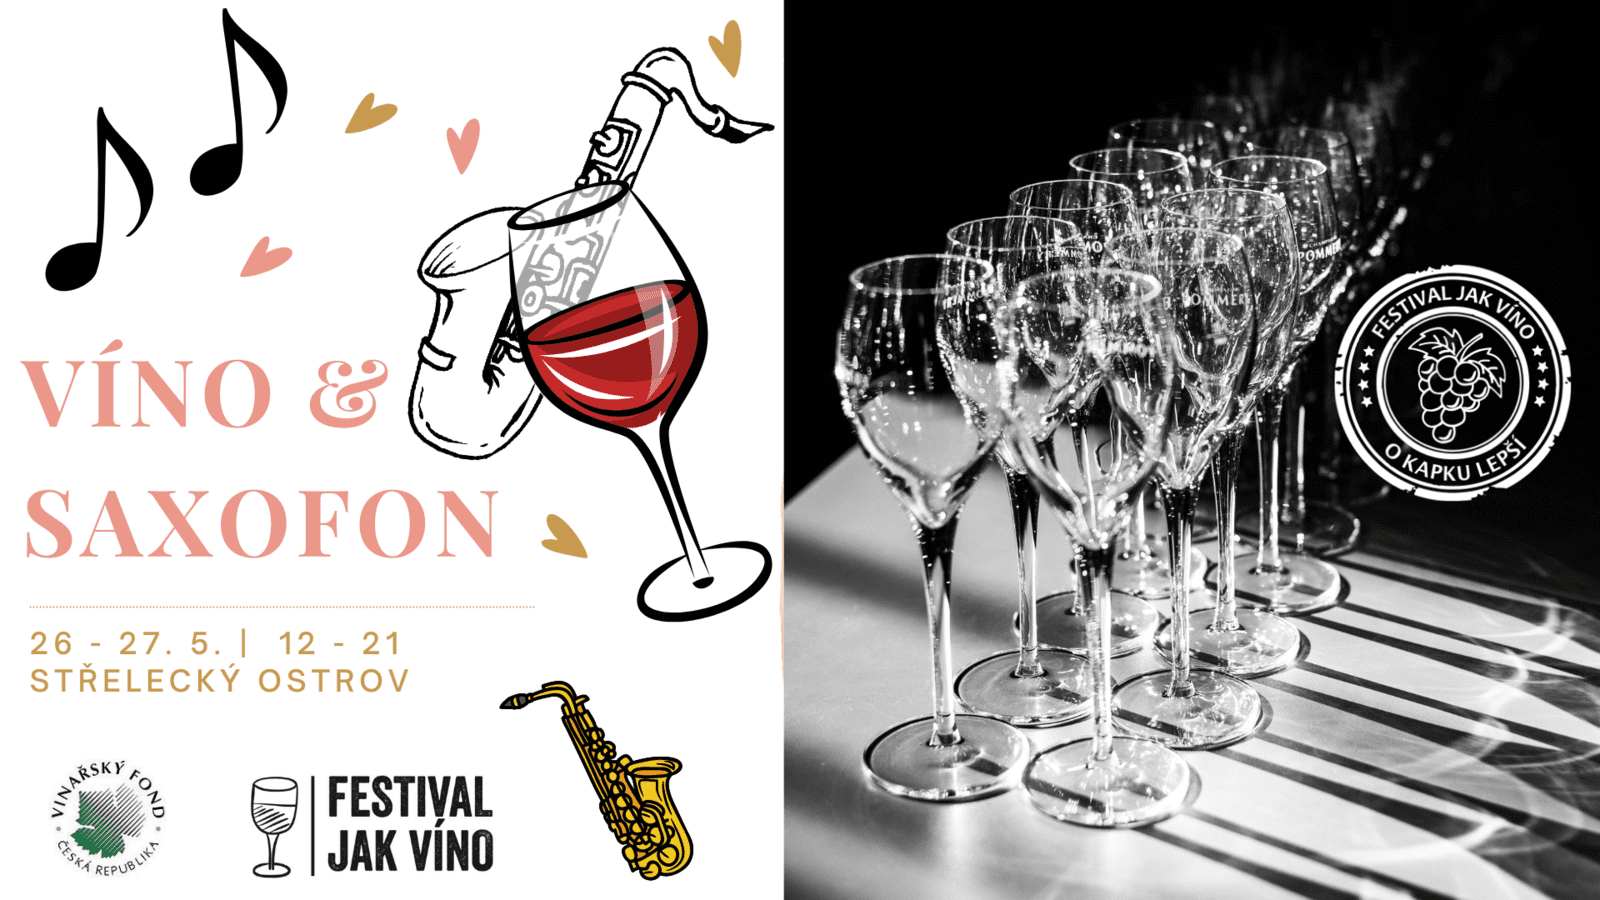 С 26 по 27 мая в Праге пройдет дегустация вин от семейных виноделен Víno a saxofon